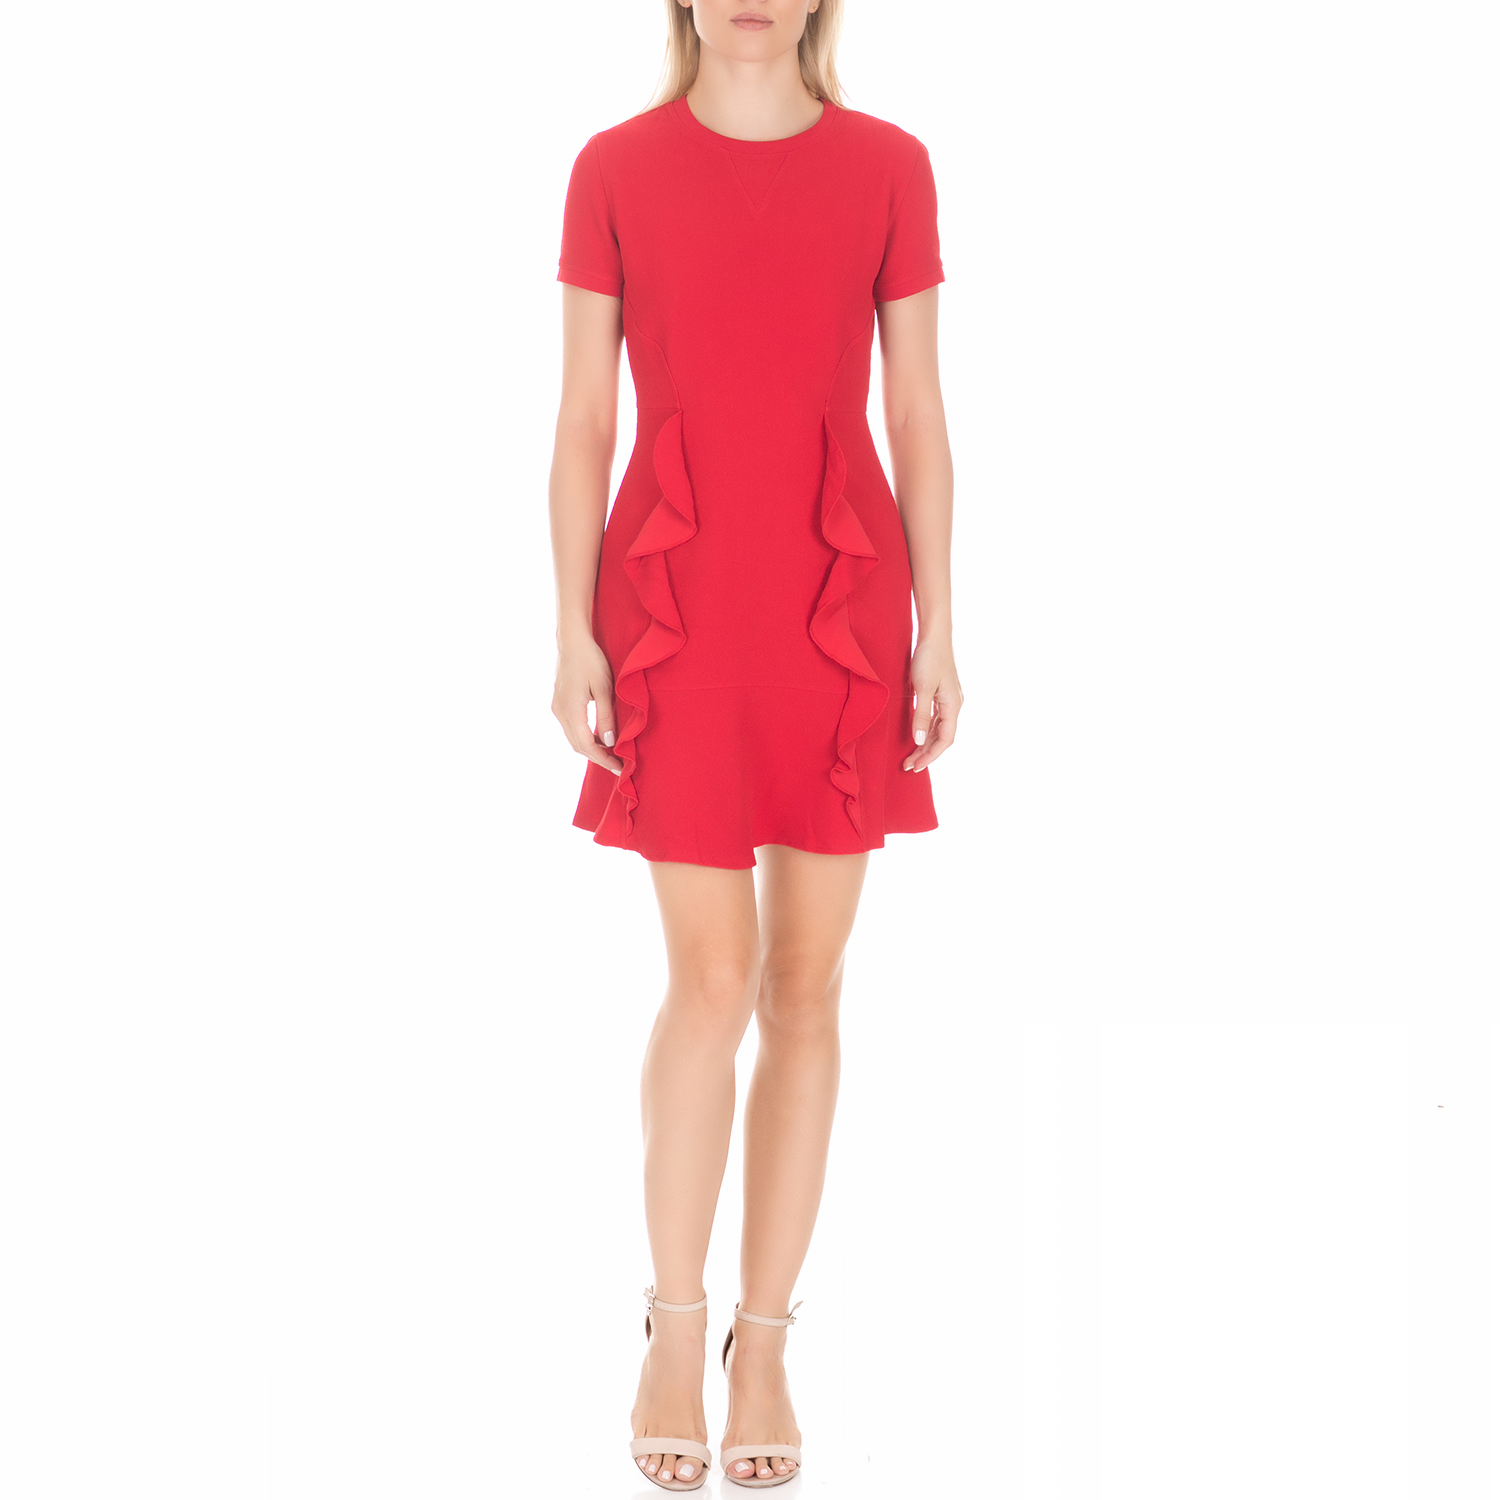 Γυναικεία/Ρούχα/Φορέματα/Μίνι JUICY COUTURE - Γυναικείο μίνι φόρεμα JUICY COUTURE SABLE RUFFLE κόκκινο